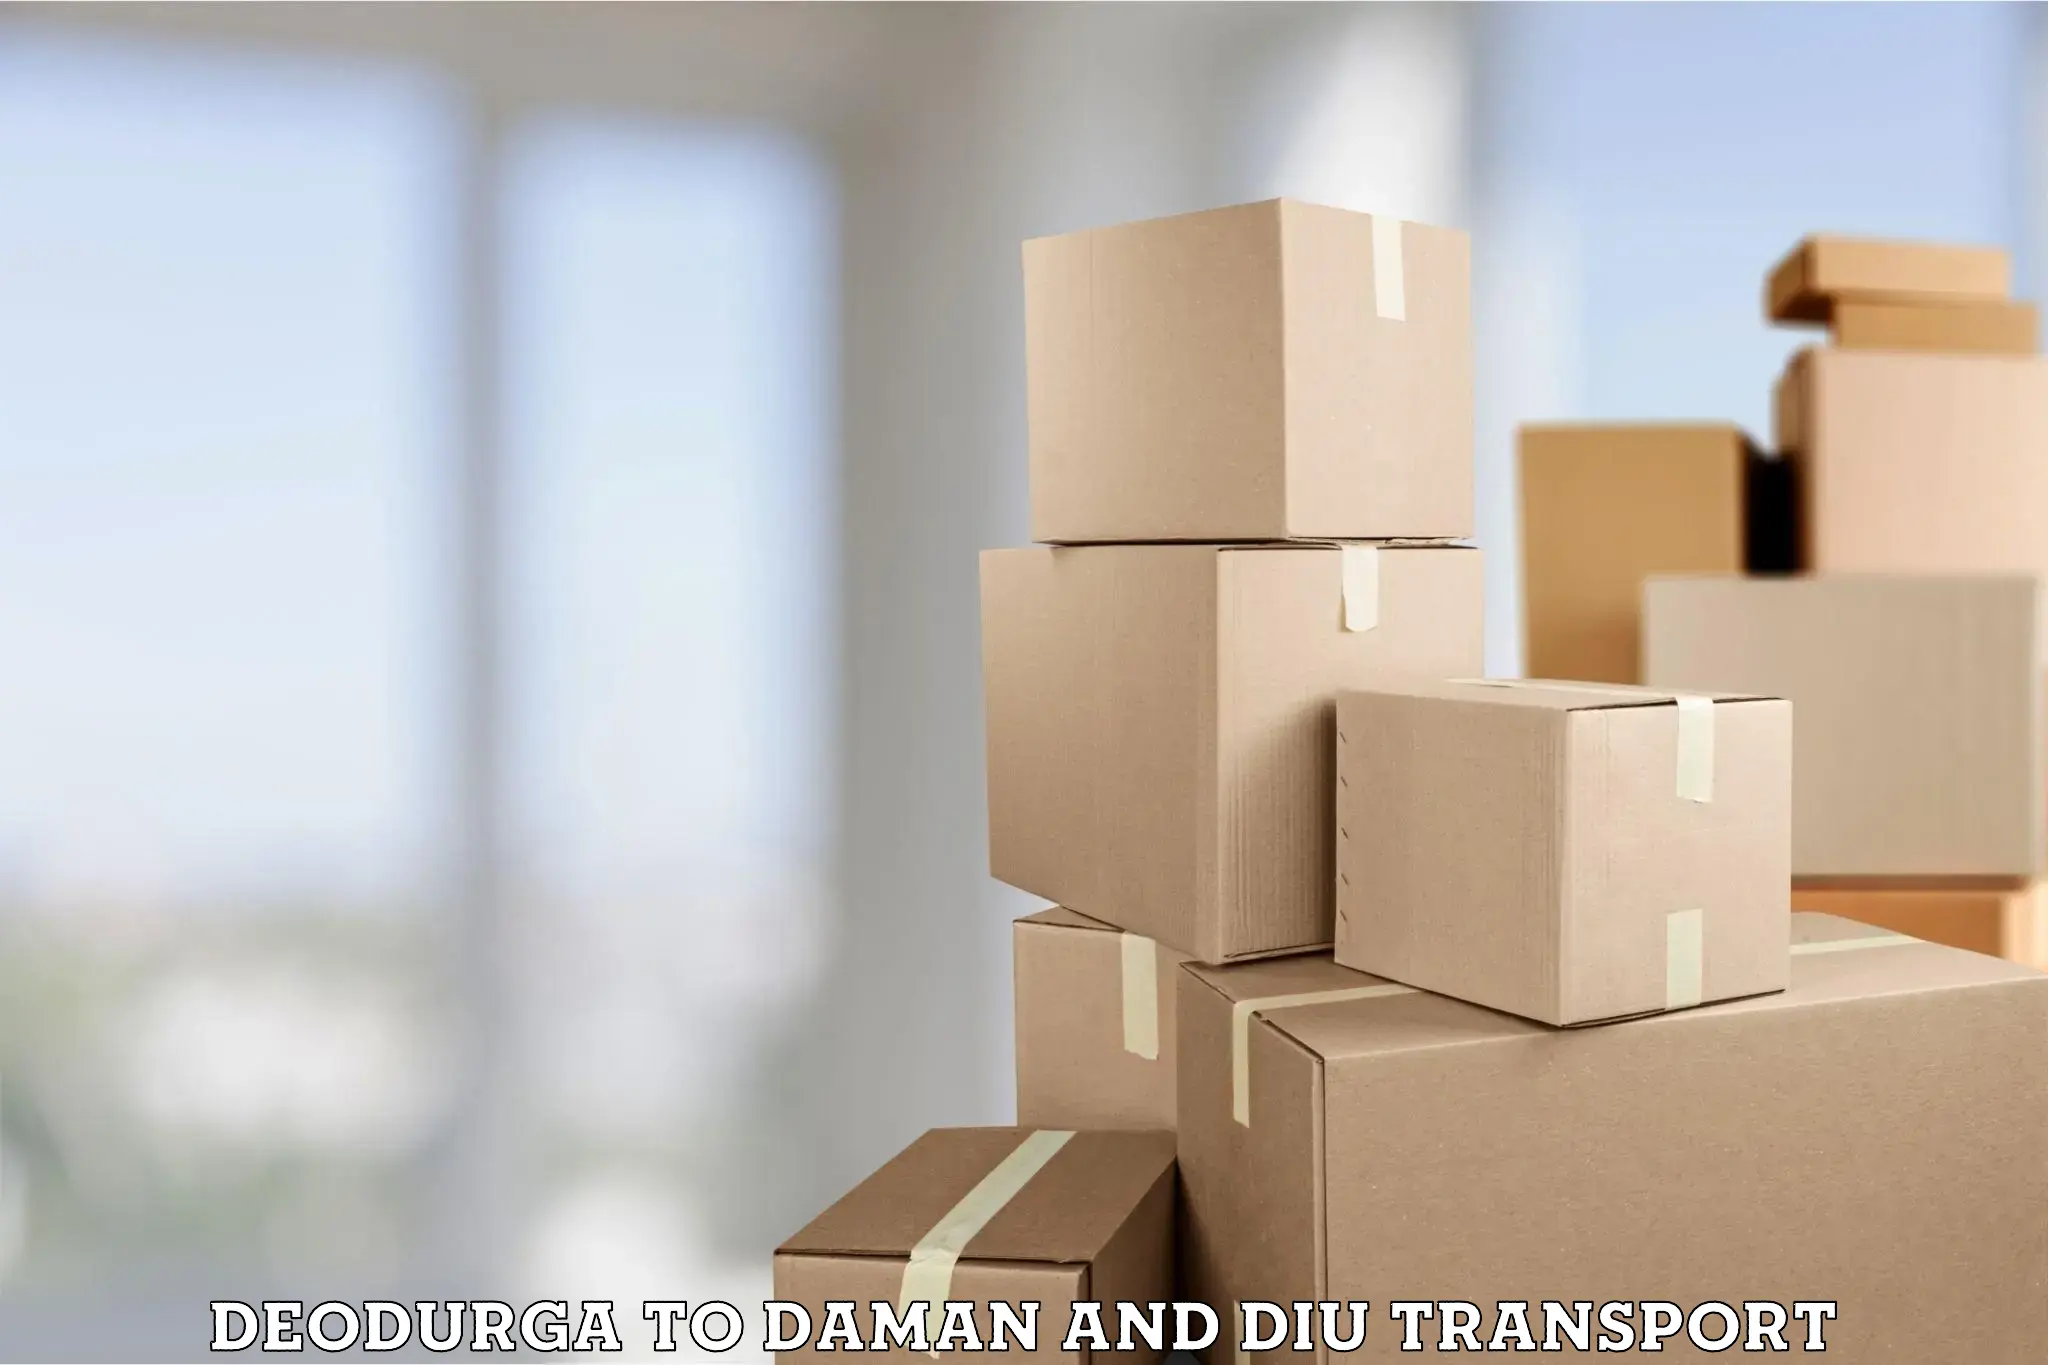 Daily parcel service transport Deodurga to Daman and Diu